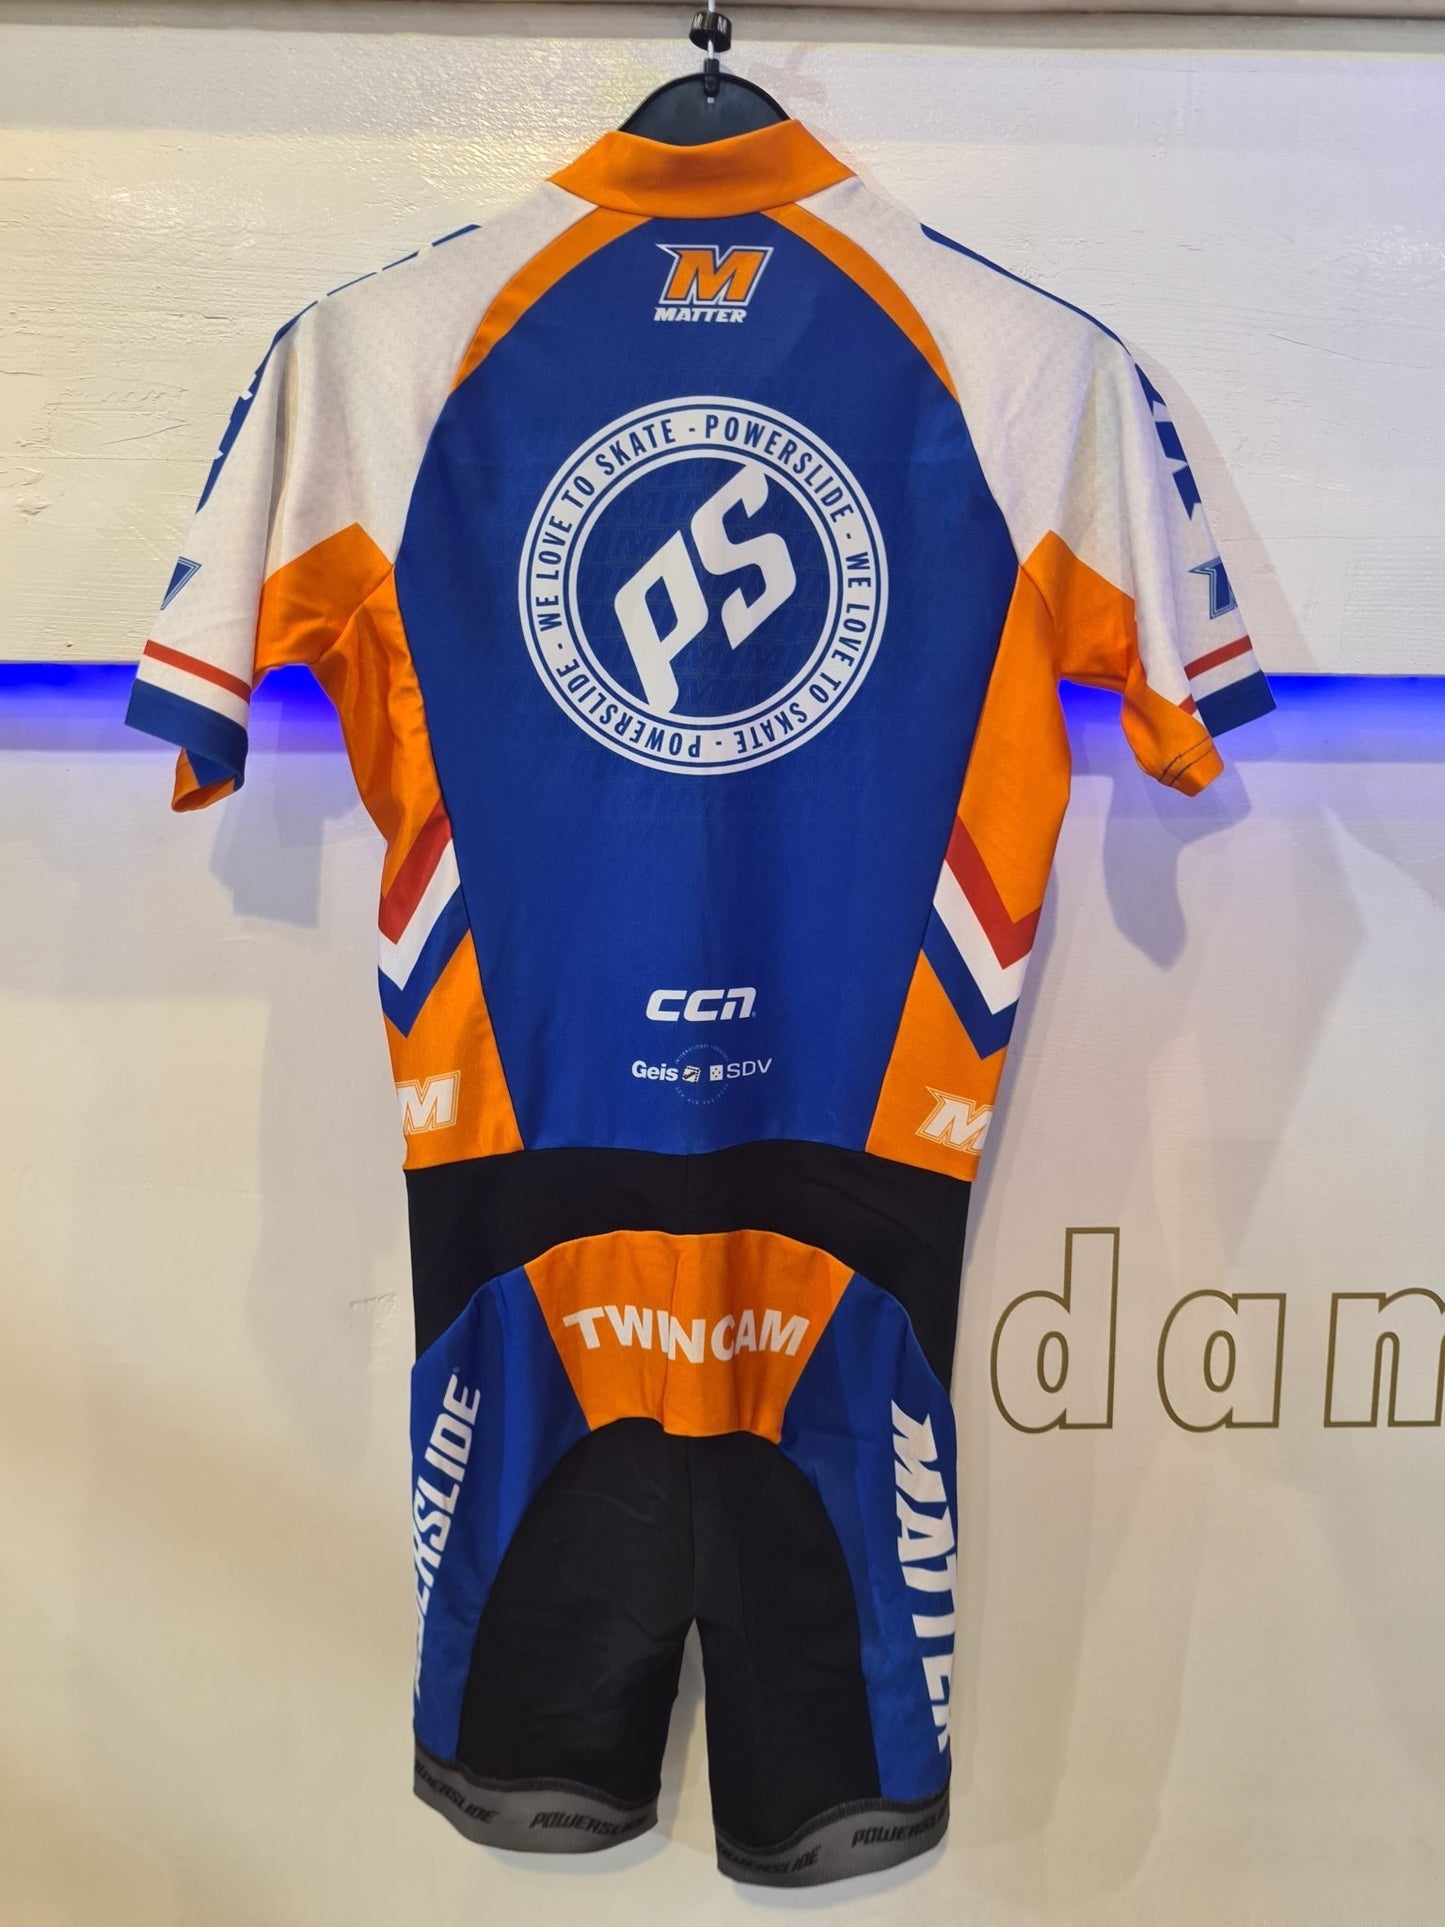 Powerslide Matter Ccn Blauw/Oranje Skeeler racing suit - Damplein 9 SKI & Fashion